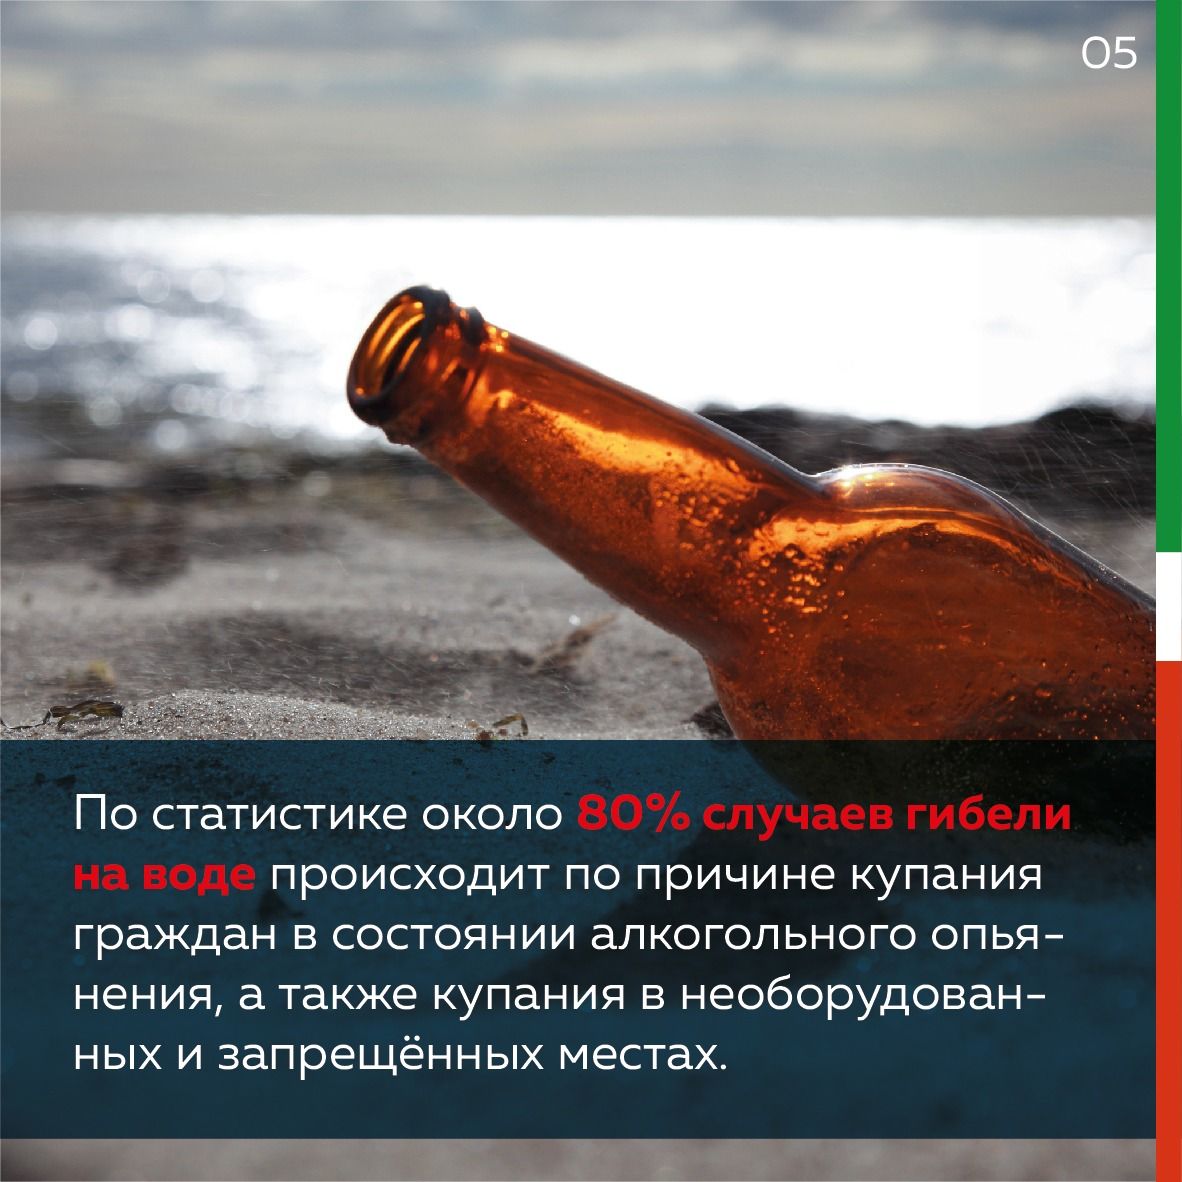 В Татарстане запрещено&nbsp;купаться на&nbsp;общественных пляжах. Нарушителей ждут штрафы